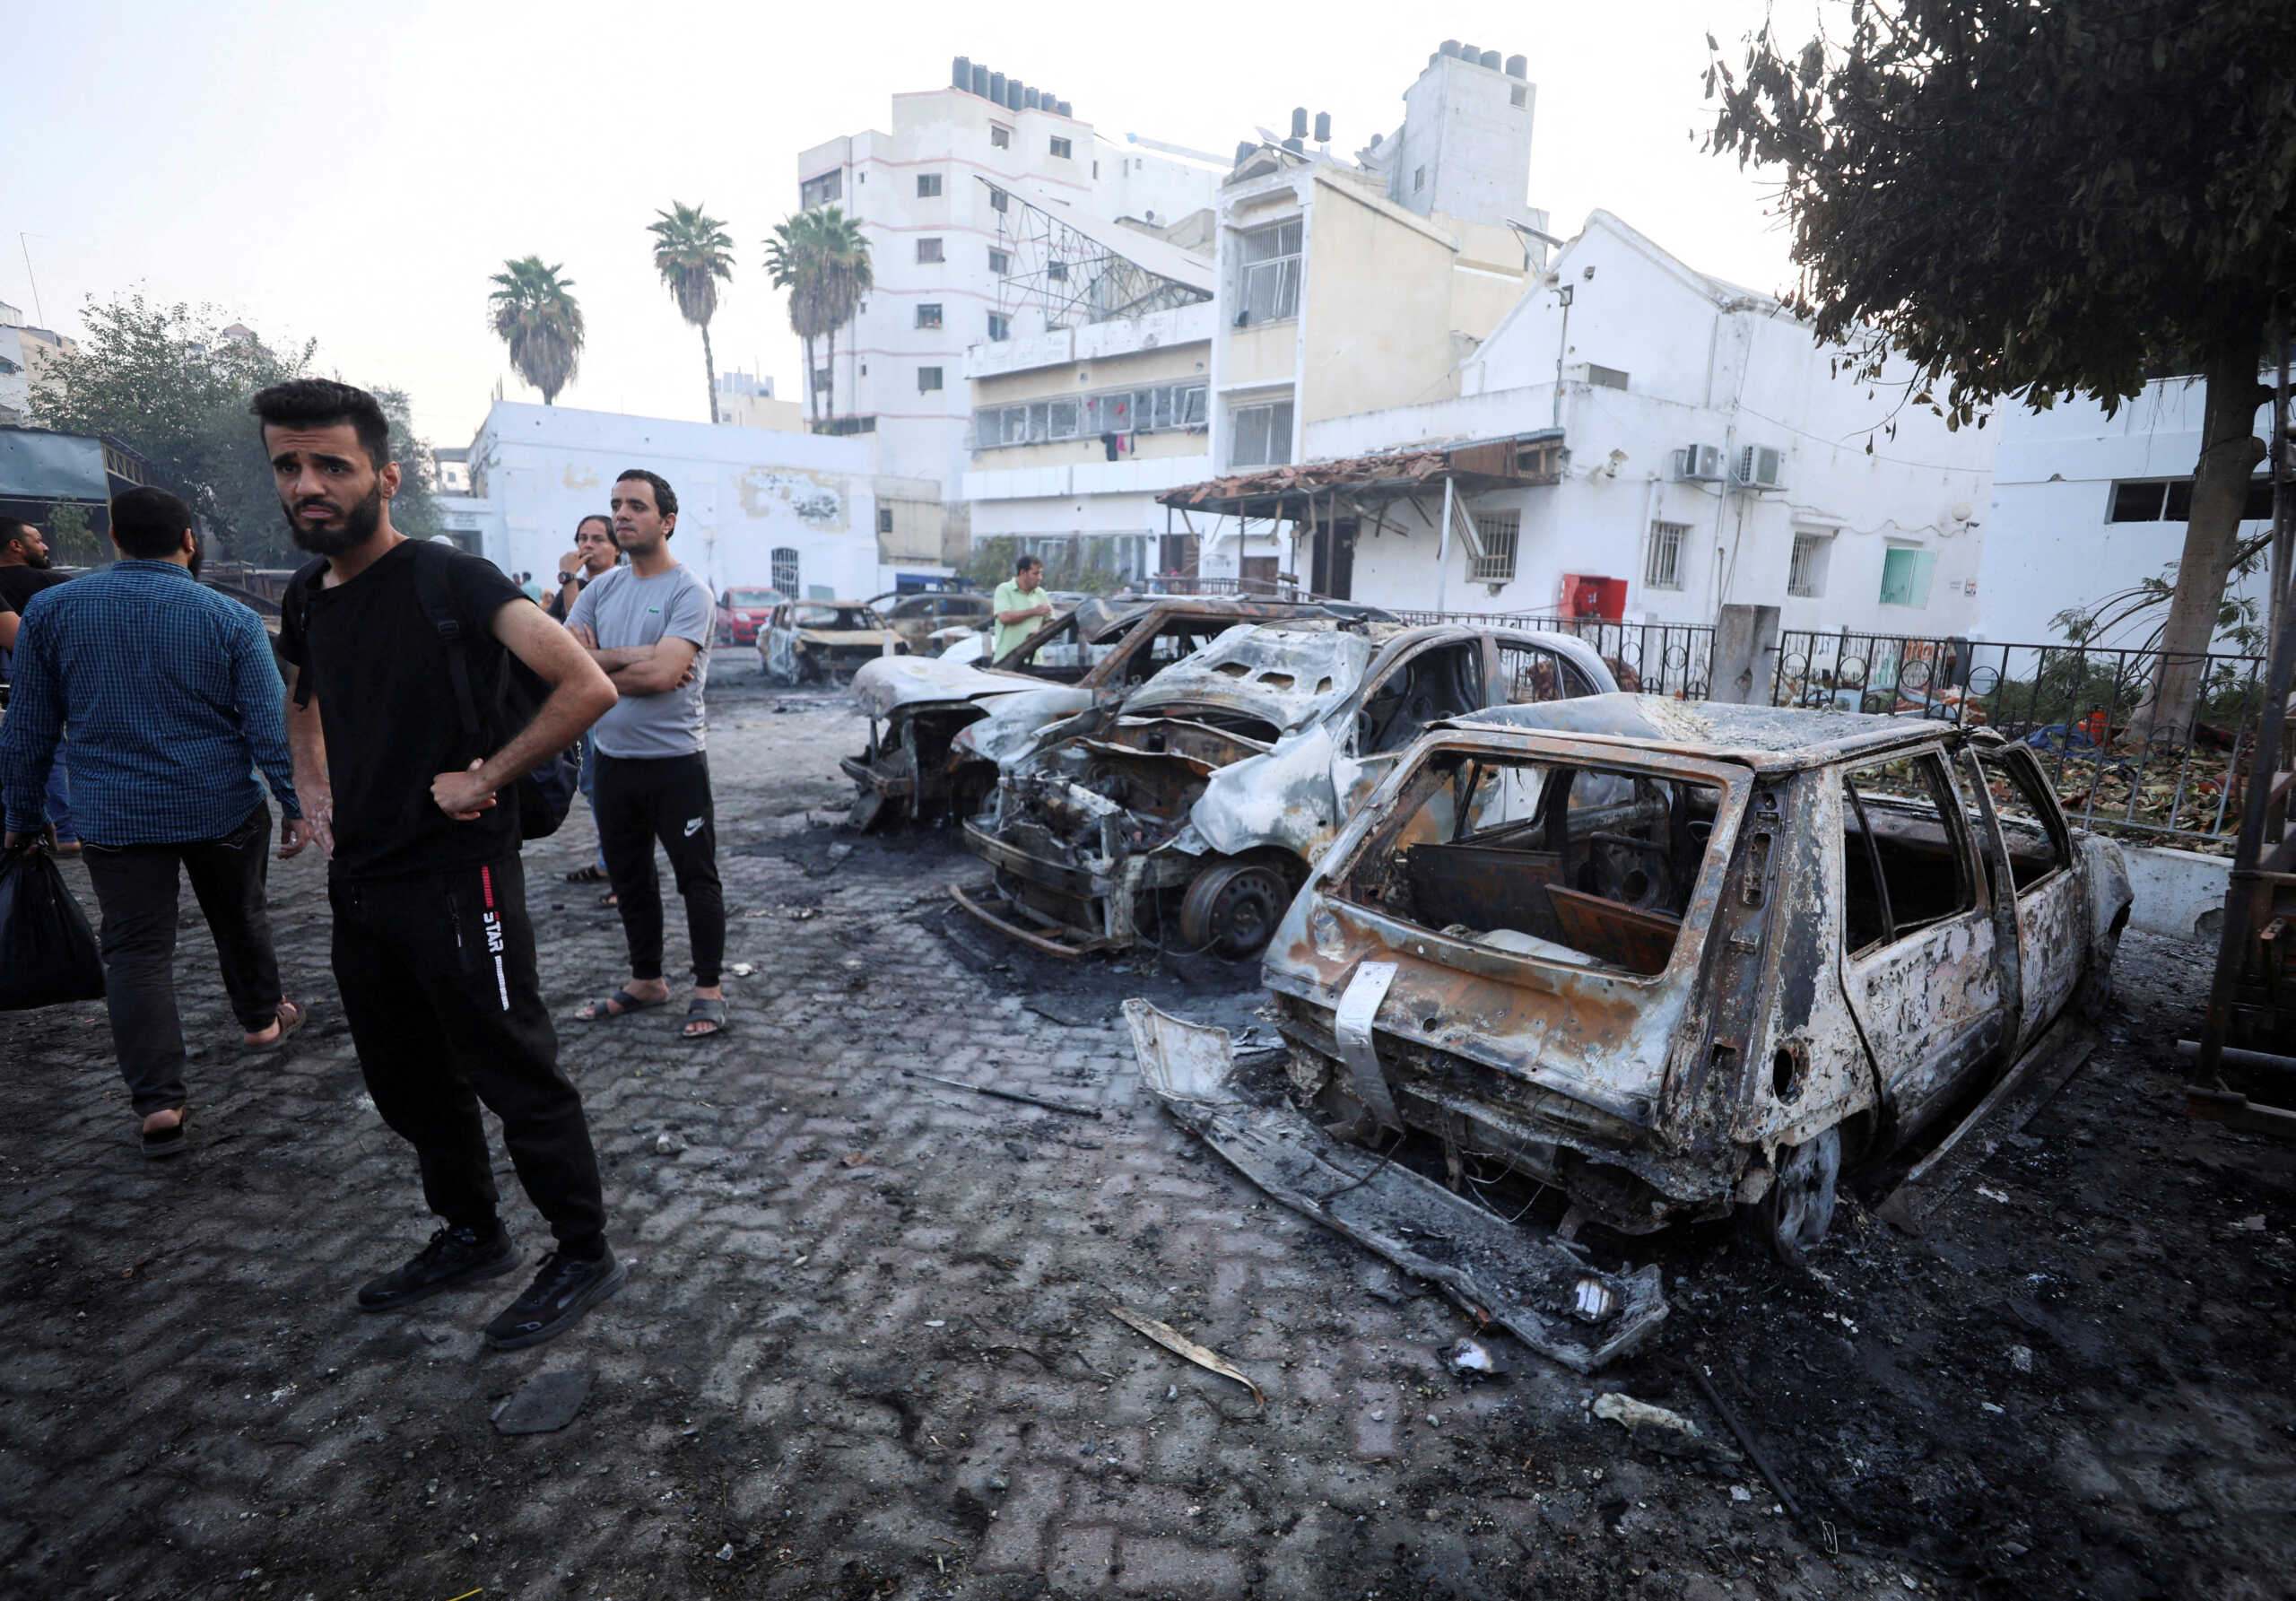 Πόλεμος στο Ισραήλ: Παλαιστινιακή ρουκέτα έπεσε στο νοσοκομείο Αλ Αχλί της Γάζας, υποστηρίζουν οι Γάλλοι